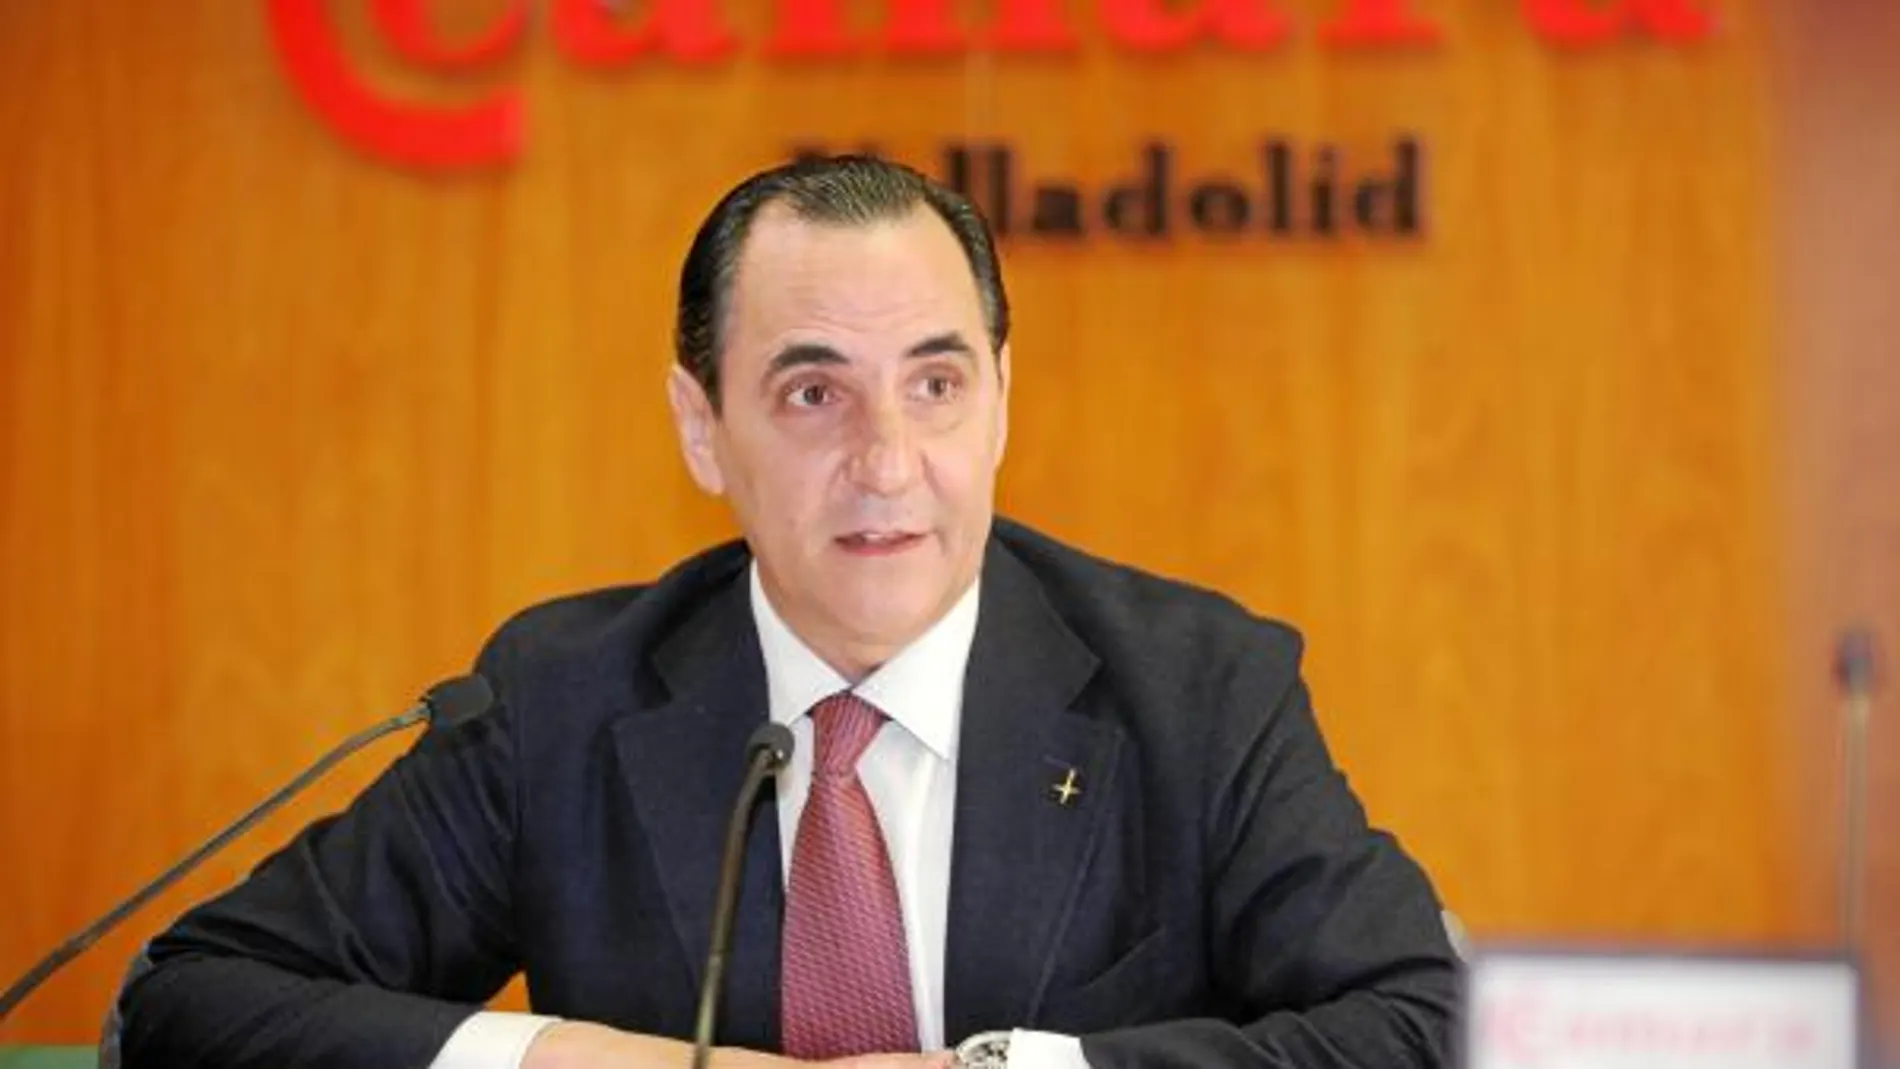 El presidente de la Cámara vallisoletana, José Rolando Álvarez, atiende a los medios de comunicación